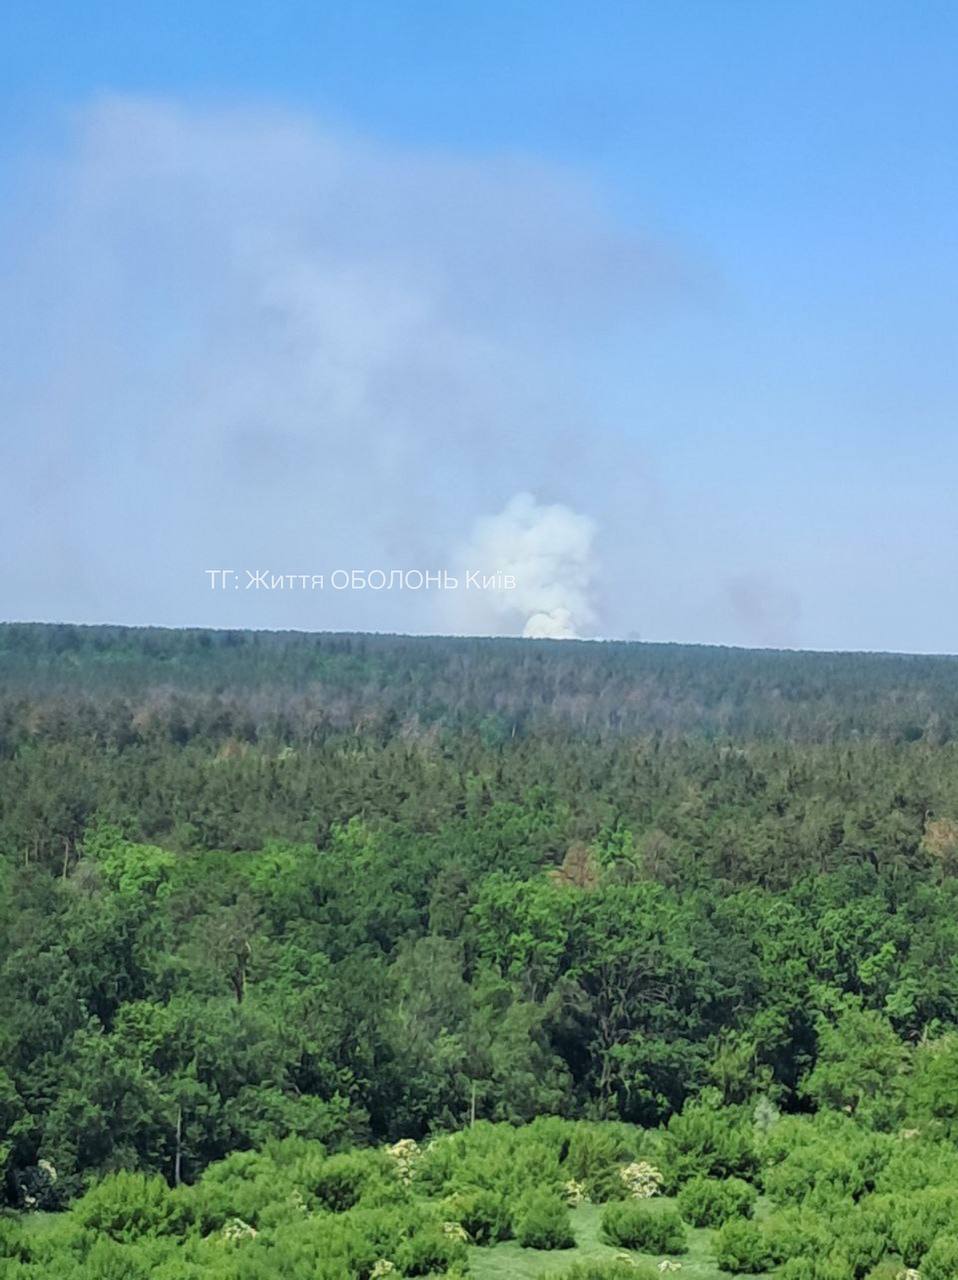 Над лісом здійнявся великий стовп диму: під Києвом виникла сильна пожежа. Фото і відео